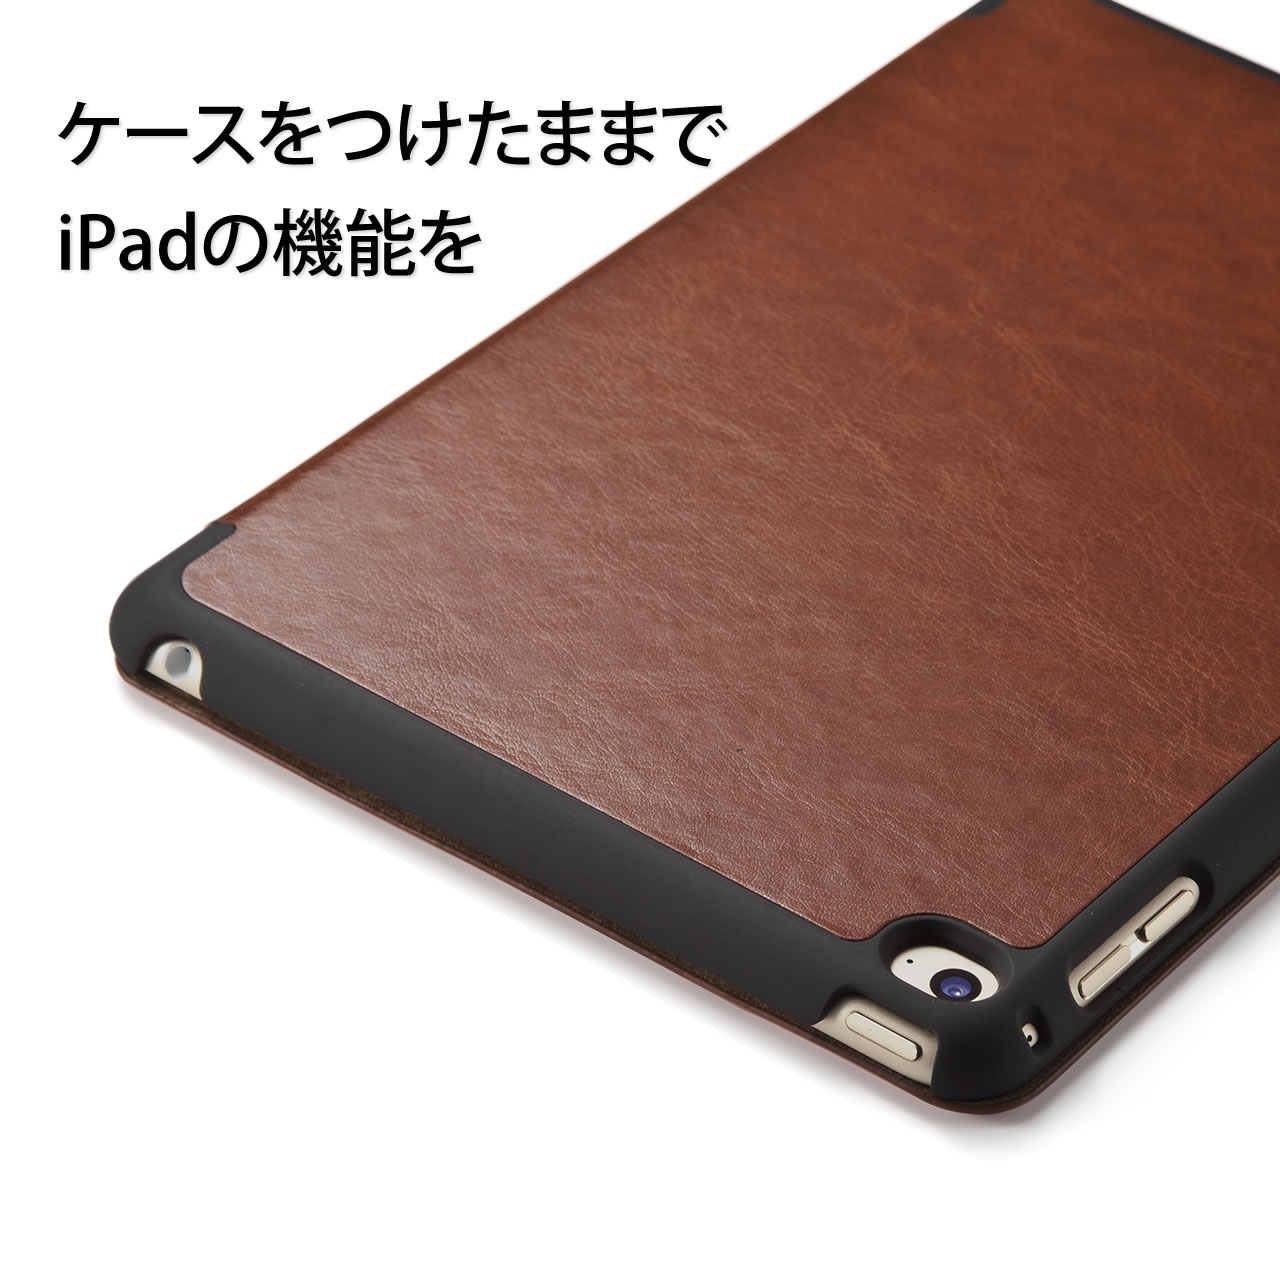 iPad mini 4\tgU[P[XiX^h@\EubNj 200-TABC005BK